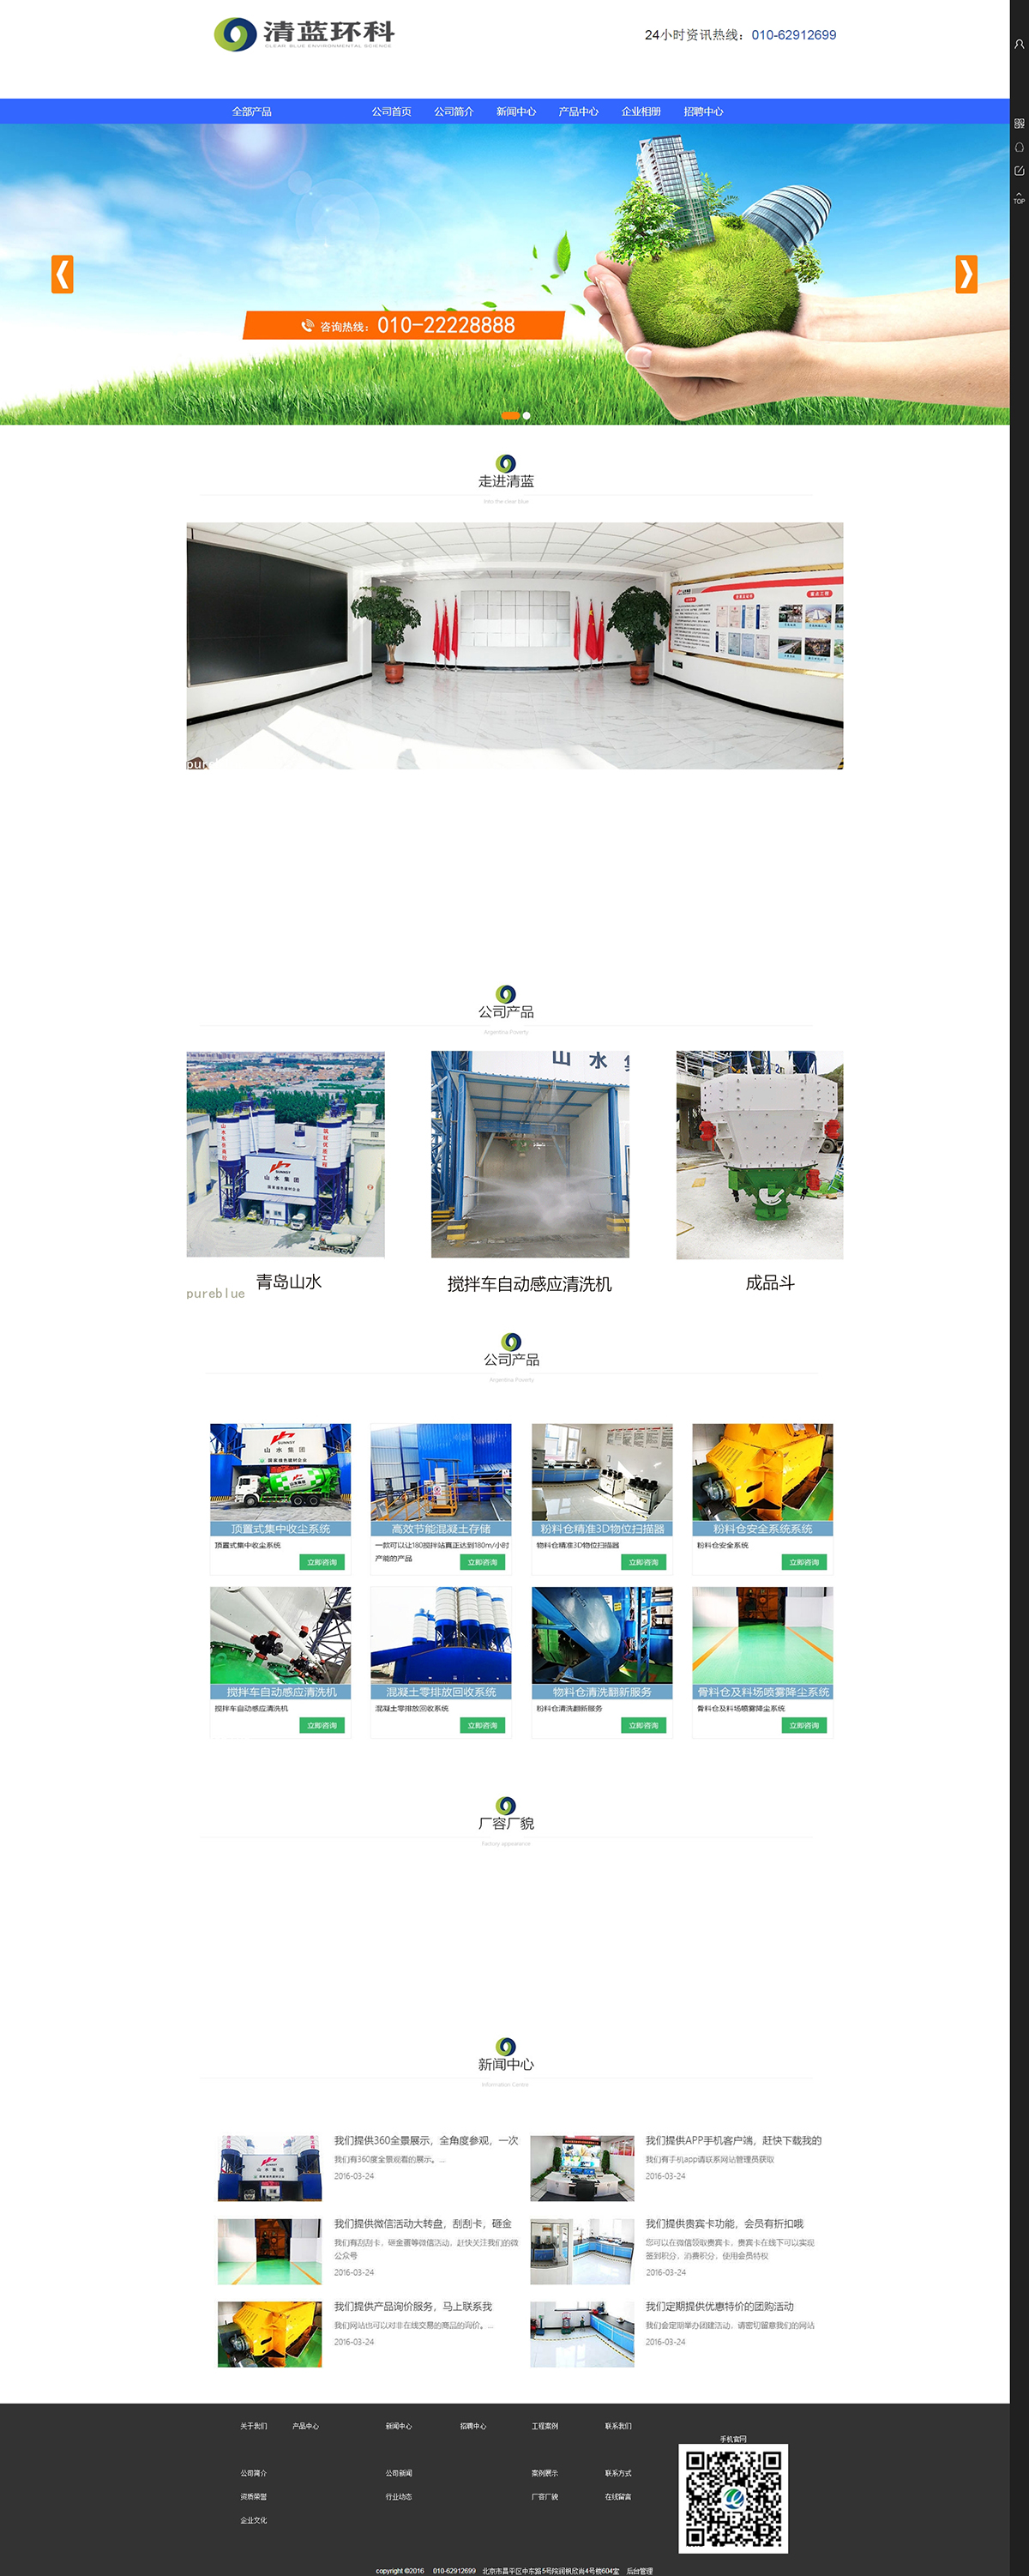 北京清蓝环保机械有限公司网站制作案例